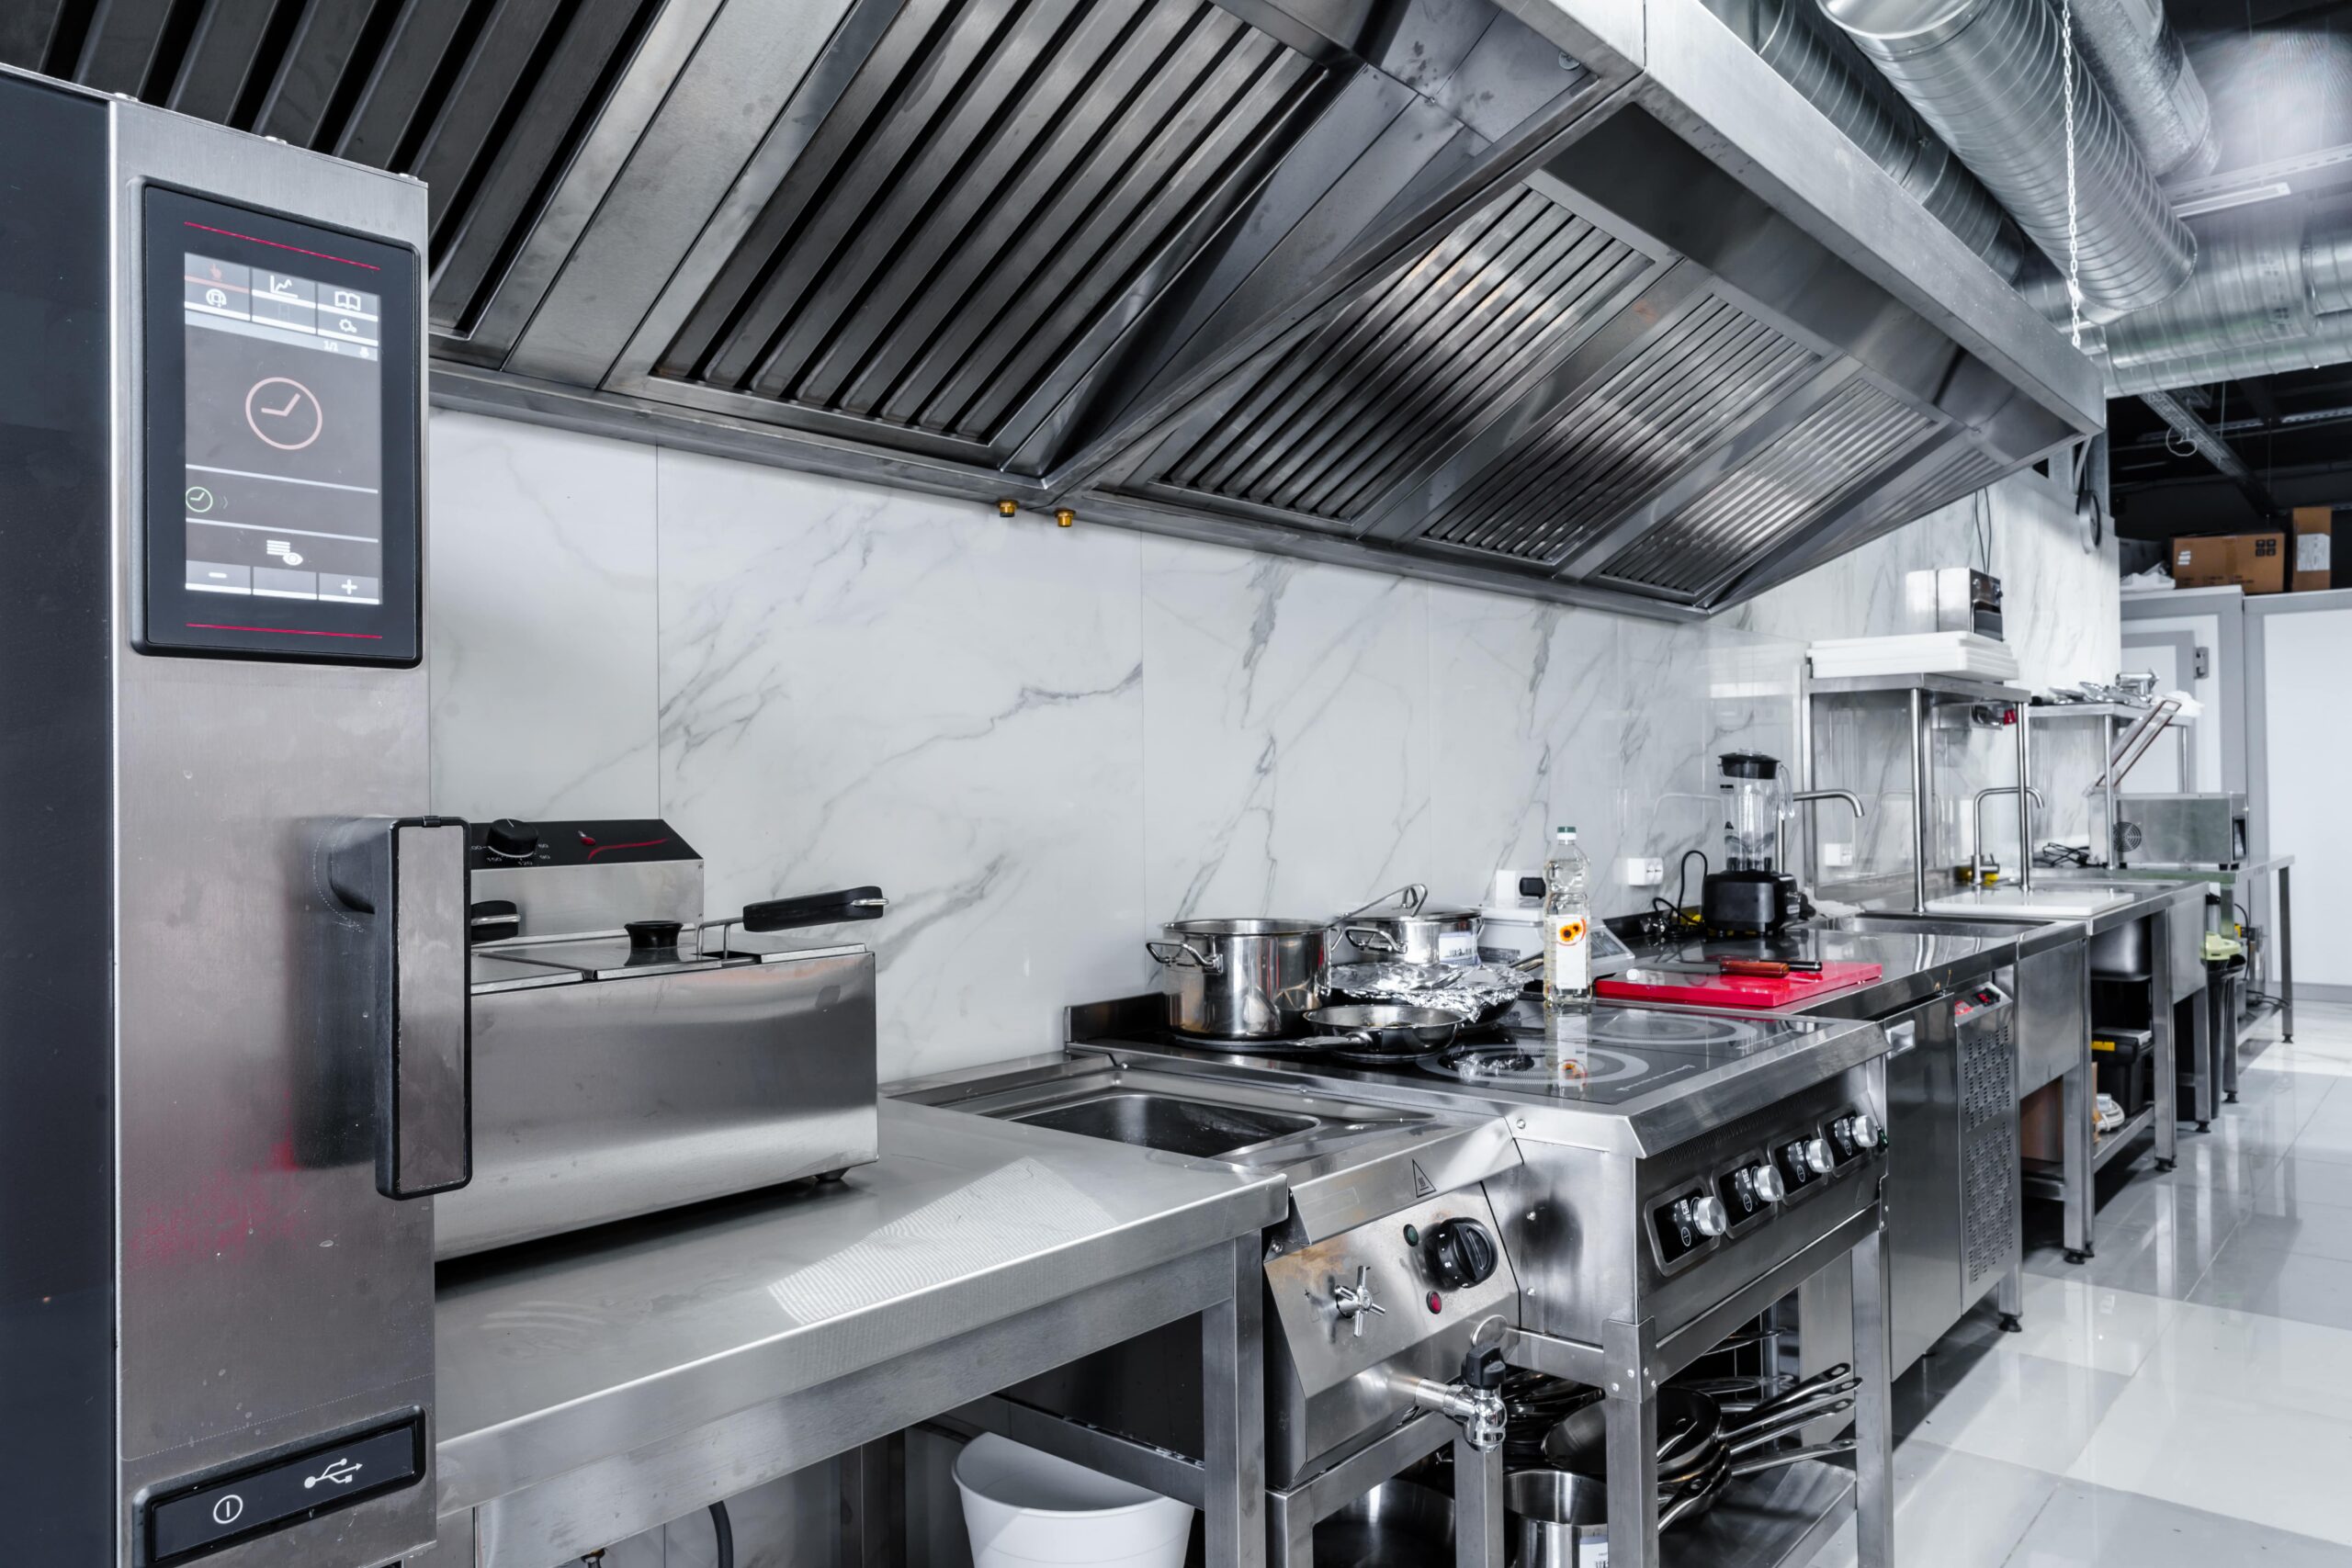 westbury kitchen-appliances-in-professional-kitchen 2